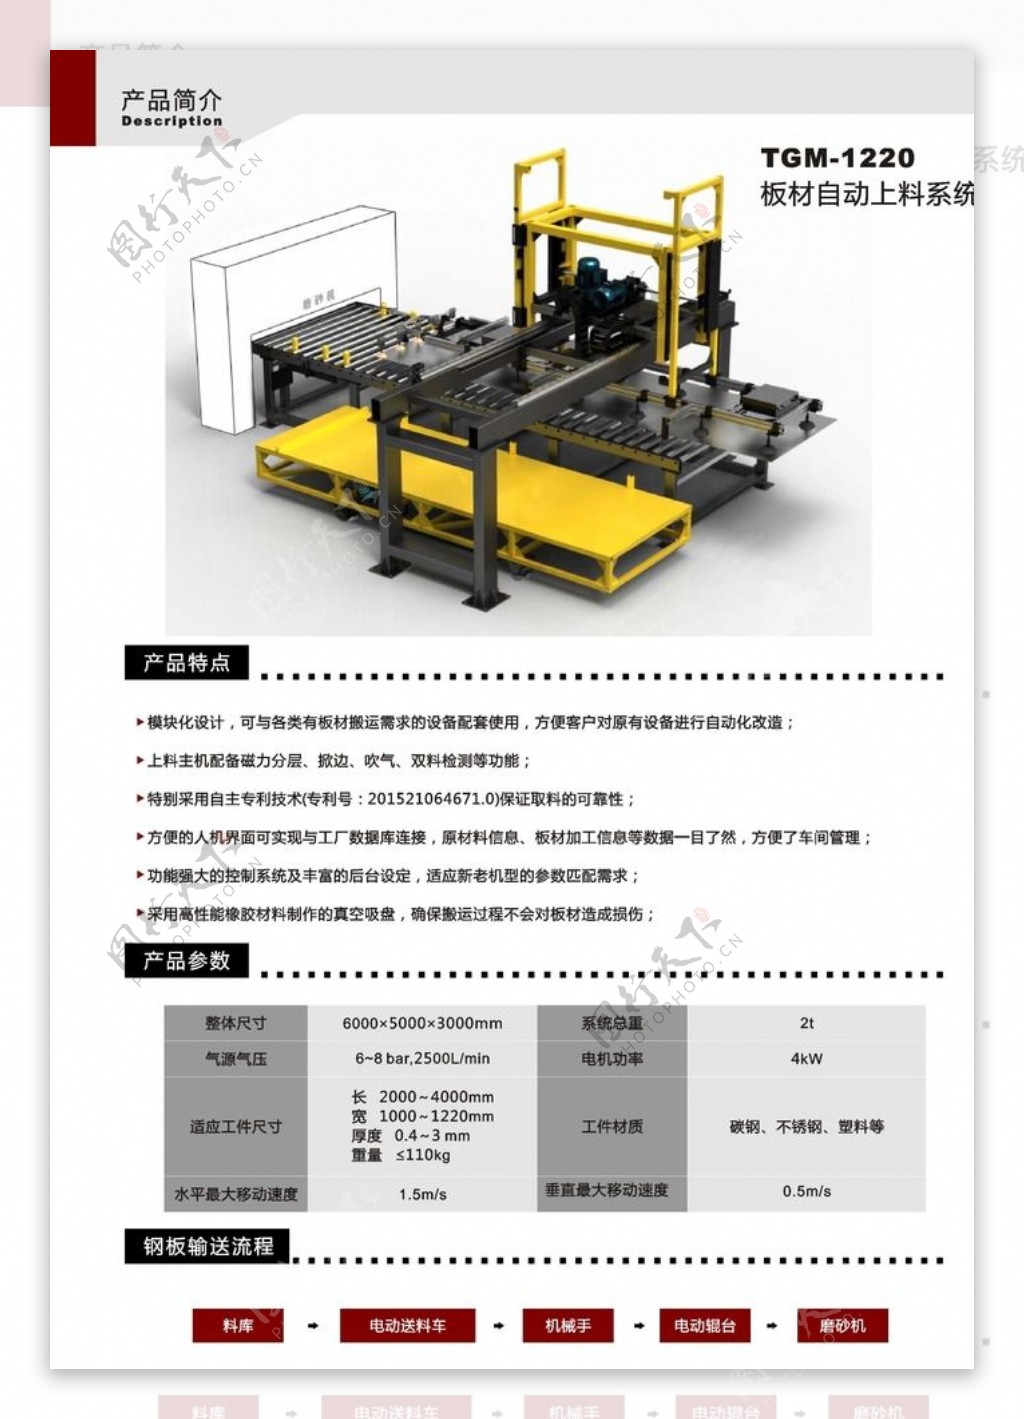 机械设备产品图册